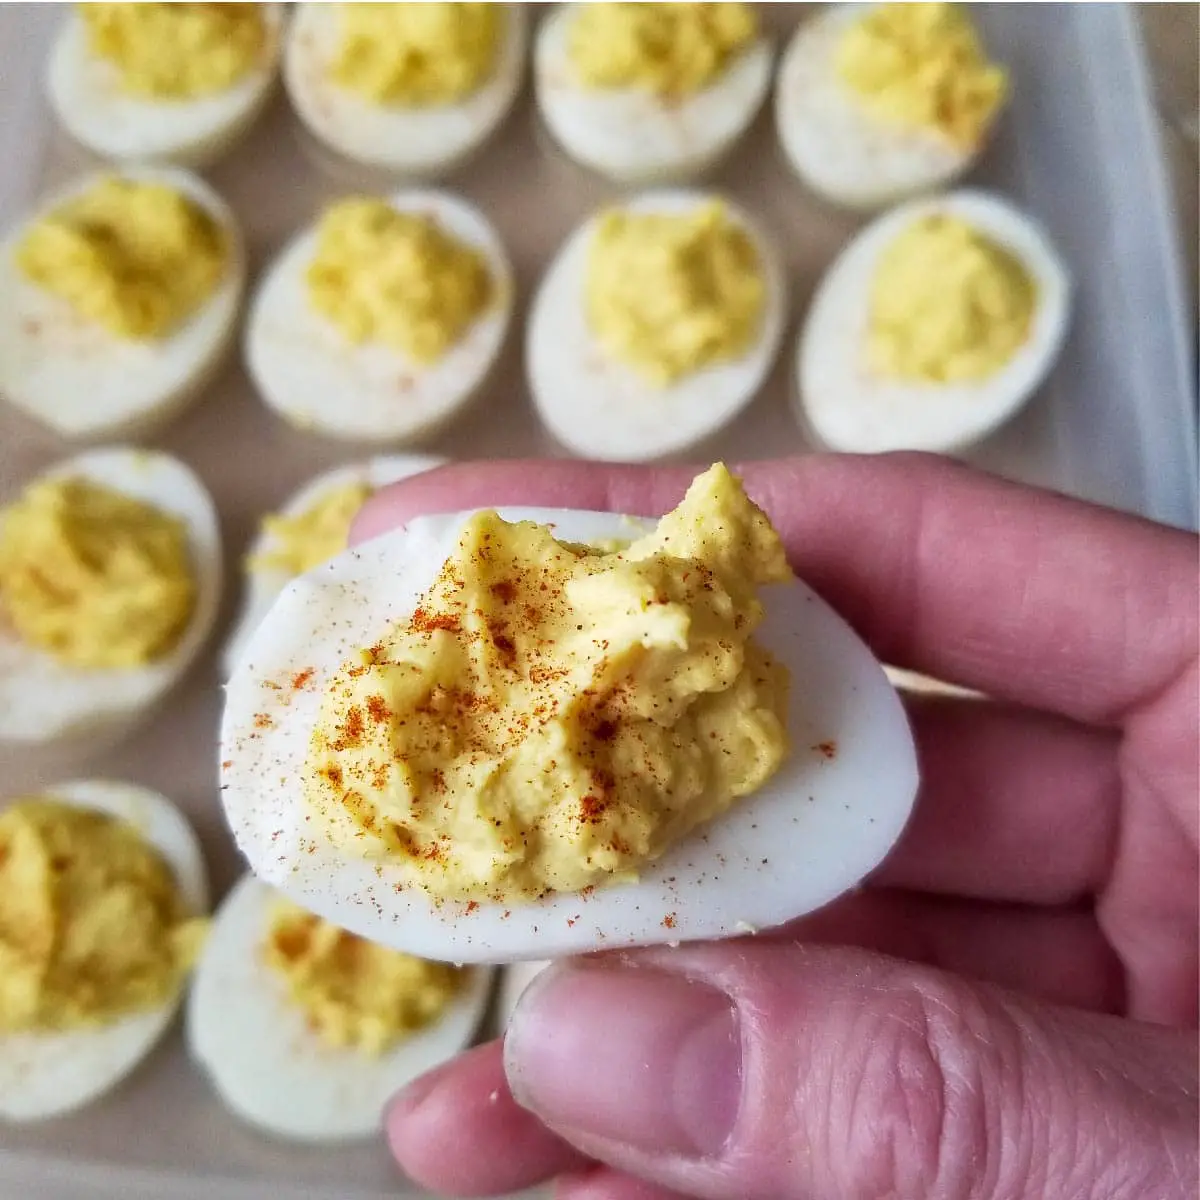 Perfect Deviled Eggs – A Classic Recipe